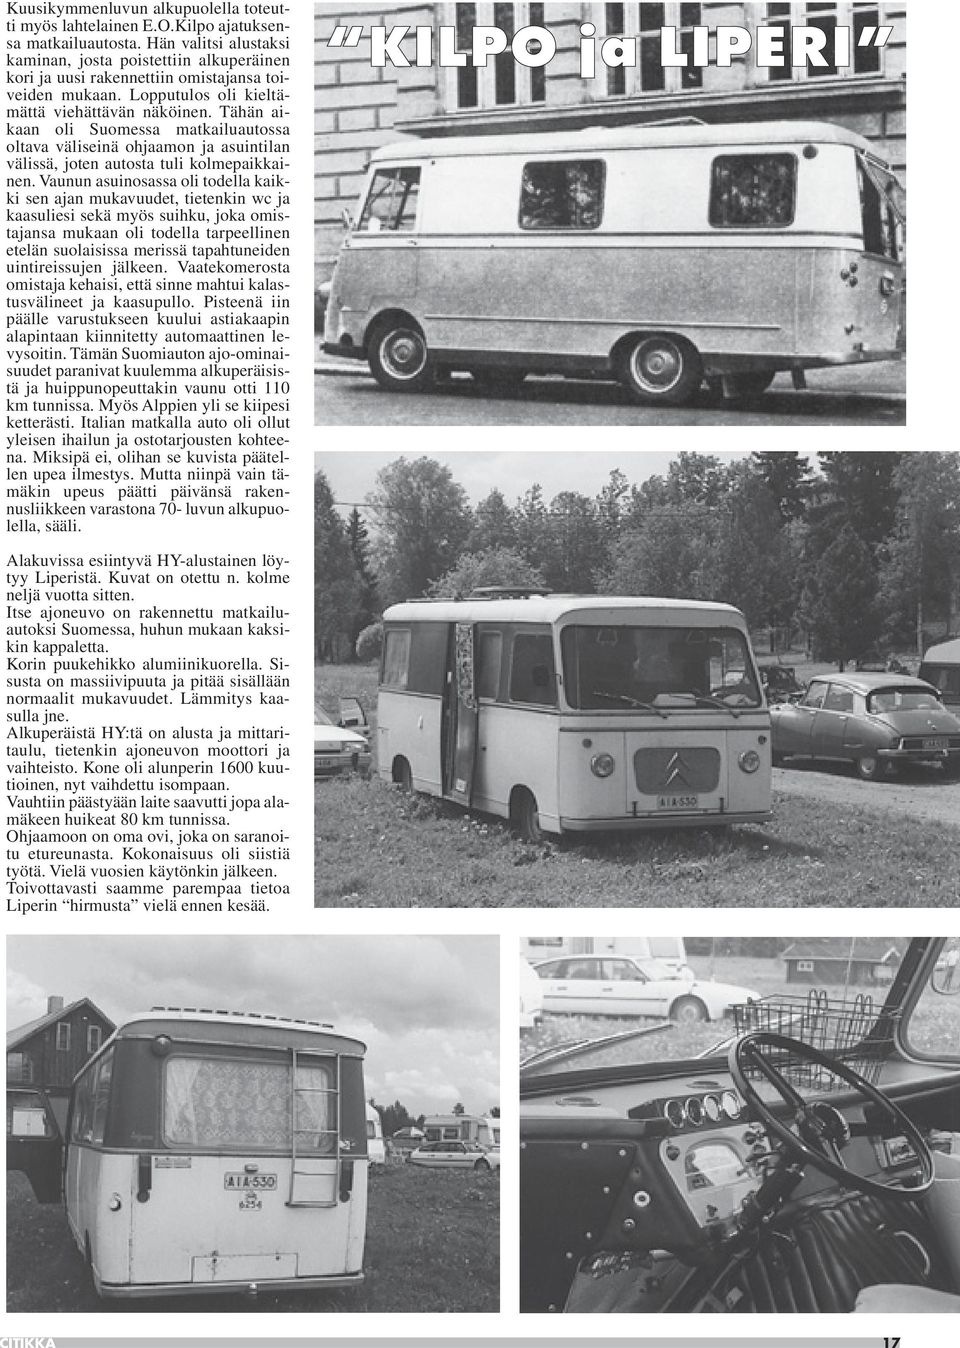 Tähän aikaan oli Suomessa matkailuautossa oltava väliseinä ohjaamon ja asuintilan välissä, joten autosta tuli kolmepaikkainen.